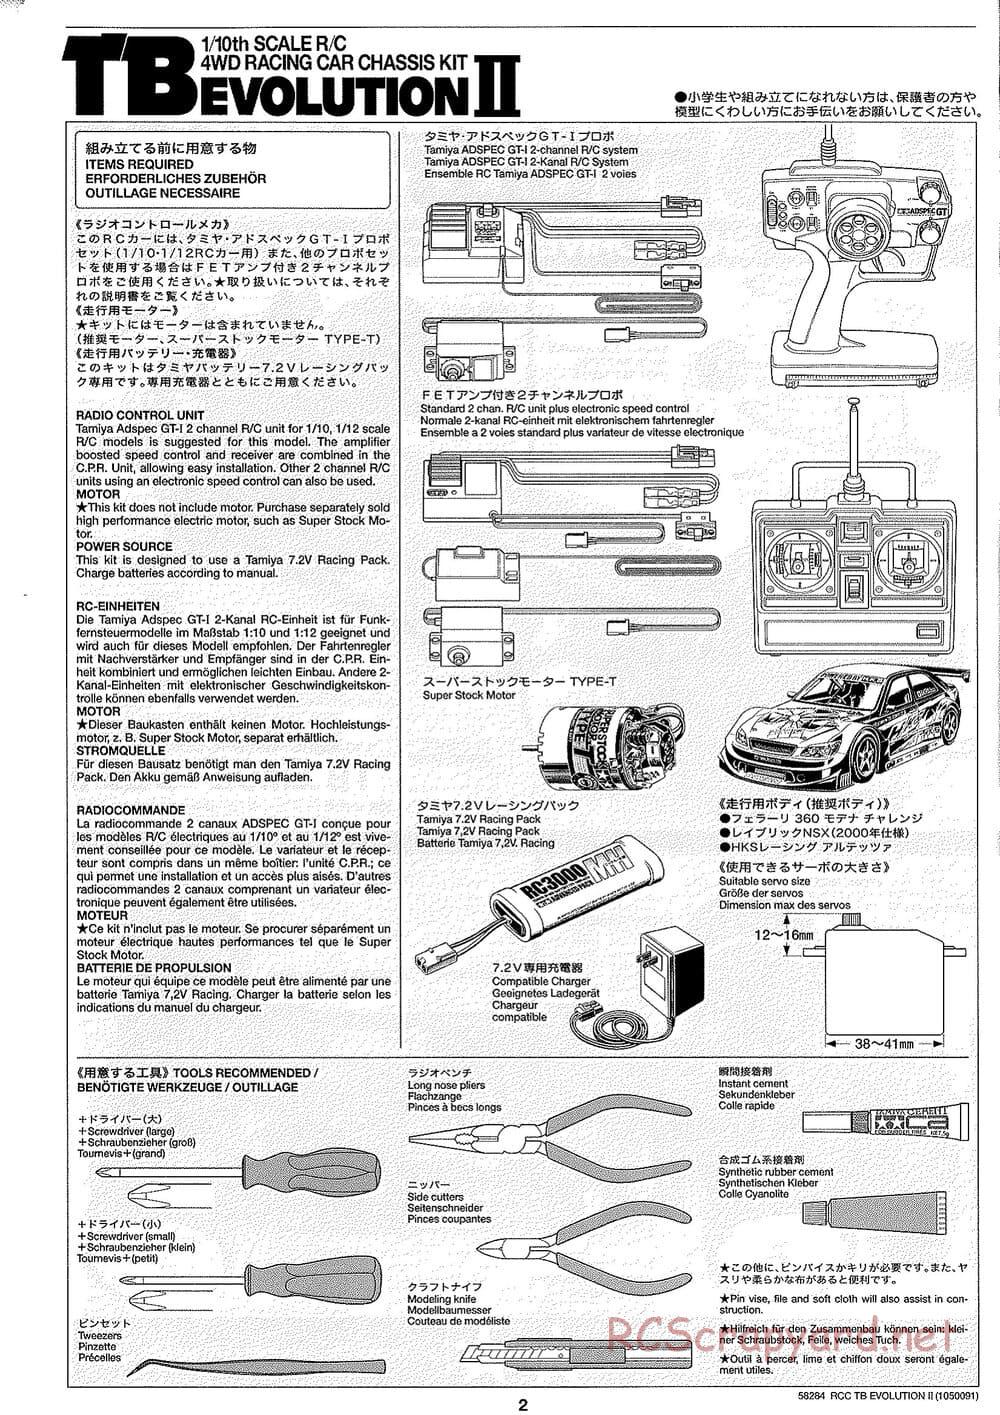 Tamiya - TB Evolution II Chassis - Manual - Page 2